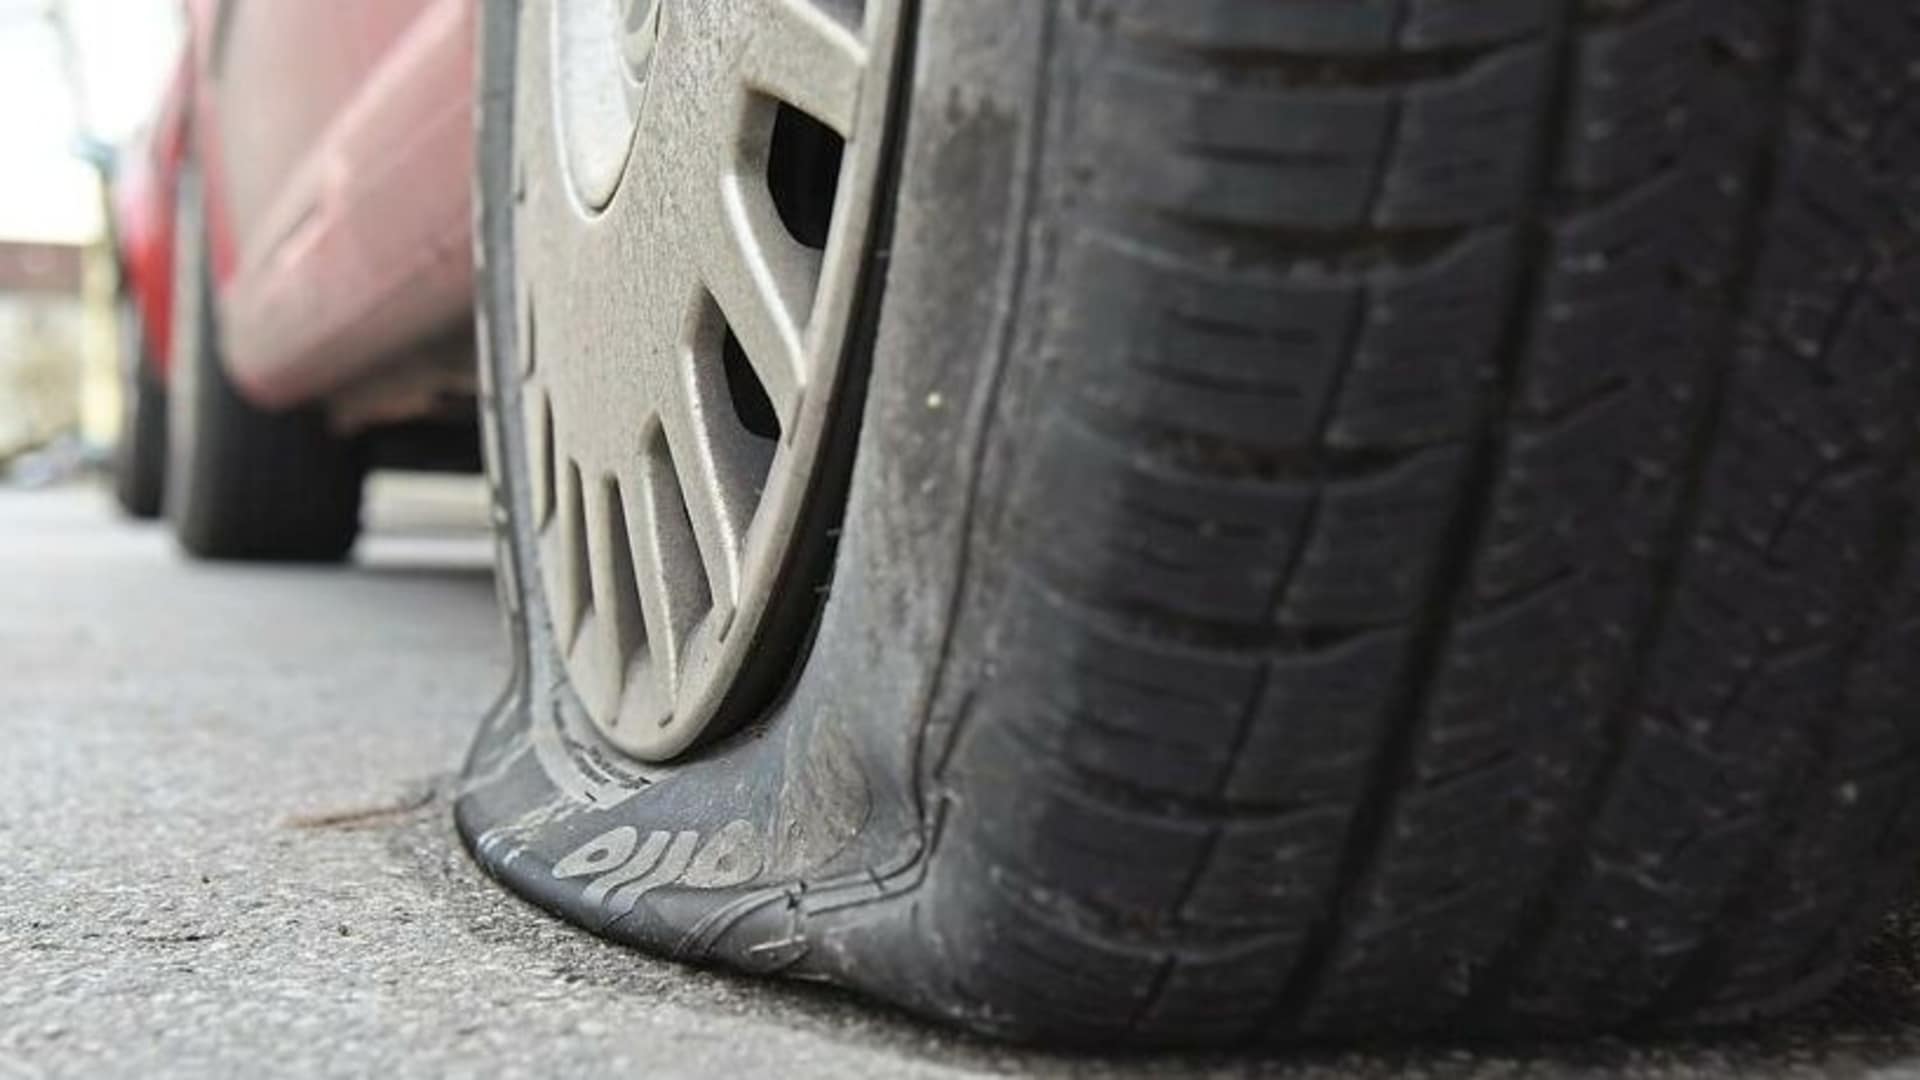 Ärger für Besitzer - Vandale nahm Auto ins Visier: Alle Reifen zerstört